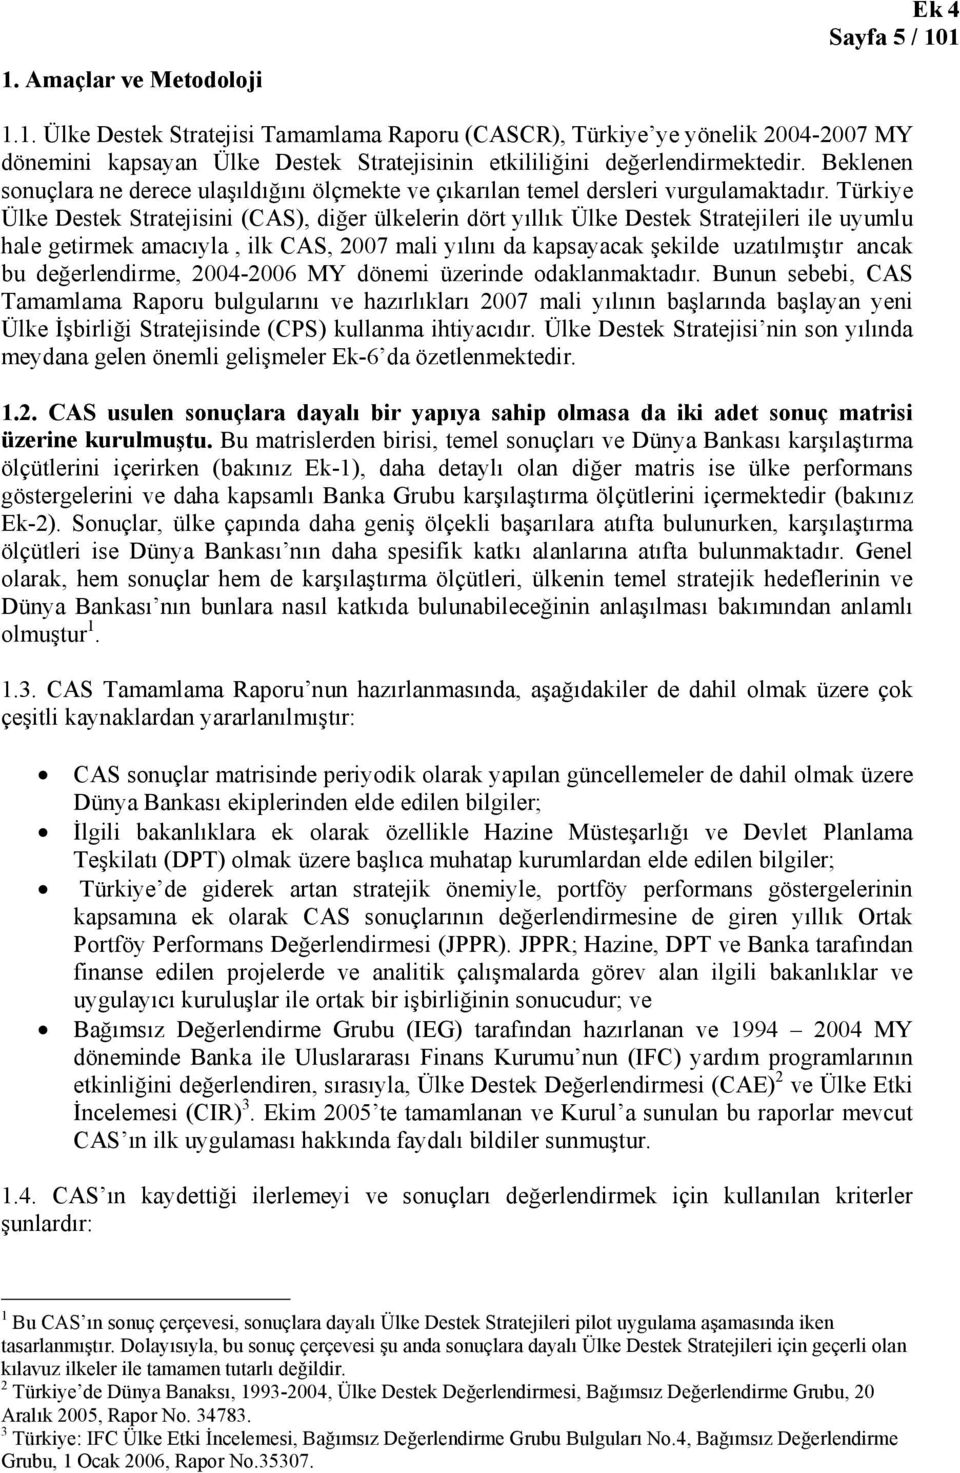 Türkiye Ülke Destek Stratejisini (CAS), diğer ülkelerin dört yıllık Ülke Destek Stratejileri ile uyumlu hale getirmek amacıyla, ilk CAS, 2007 mali yılını da kapsayacak şekilde uzatılmıştır ancak bu